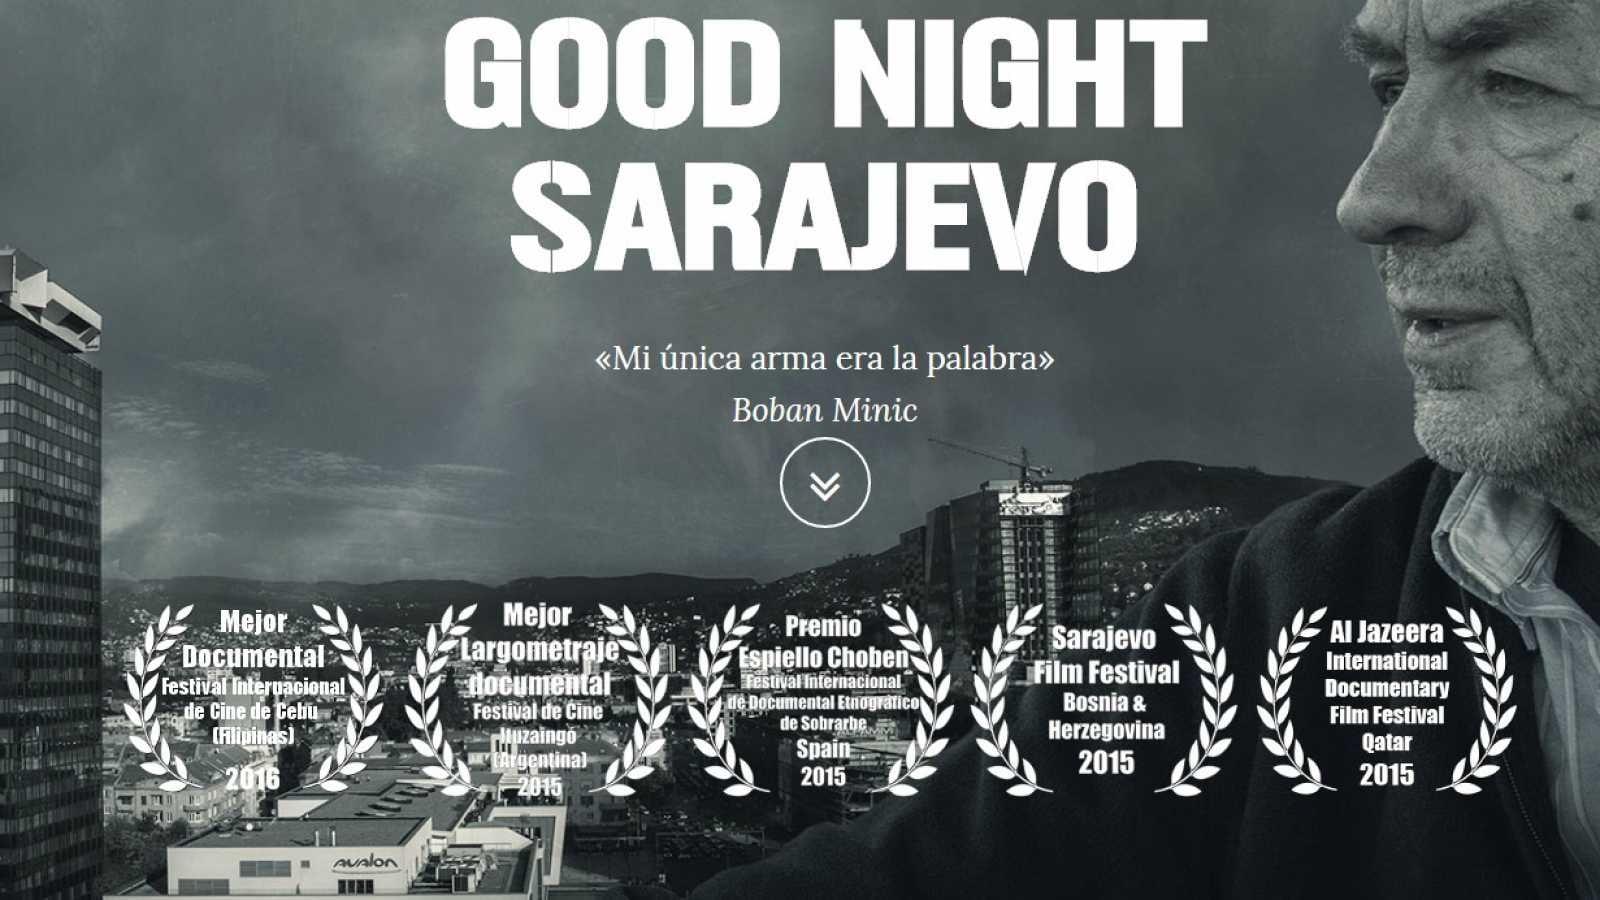 Good Night Sarajevo backdrop